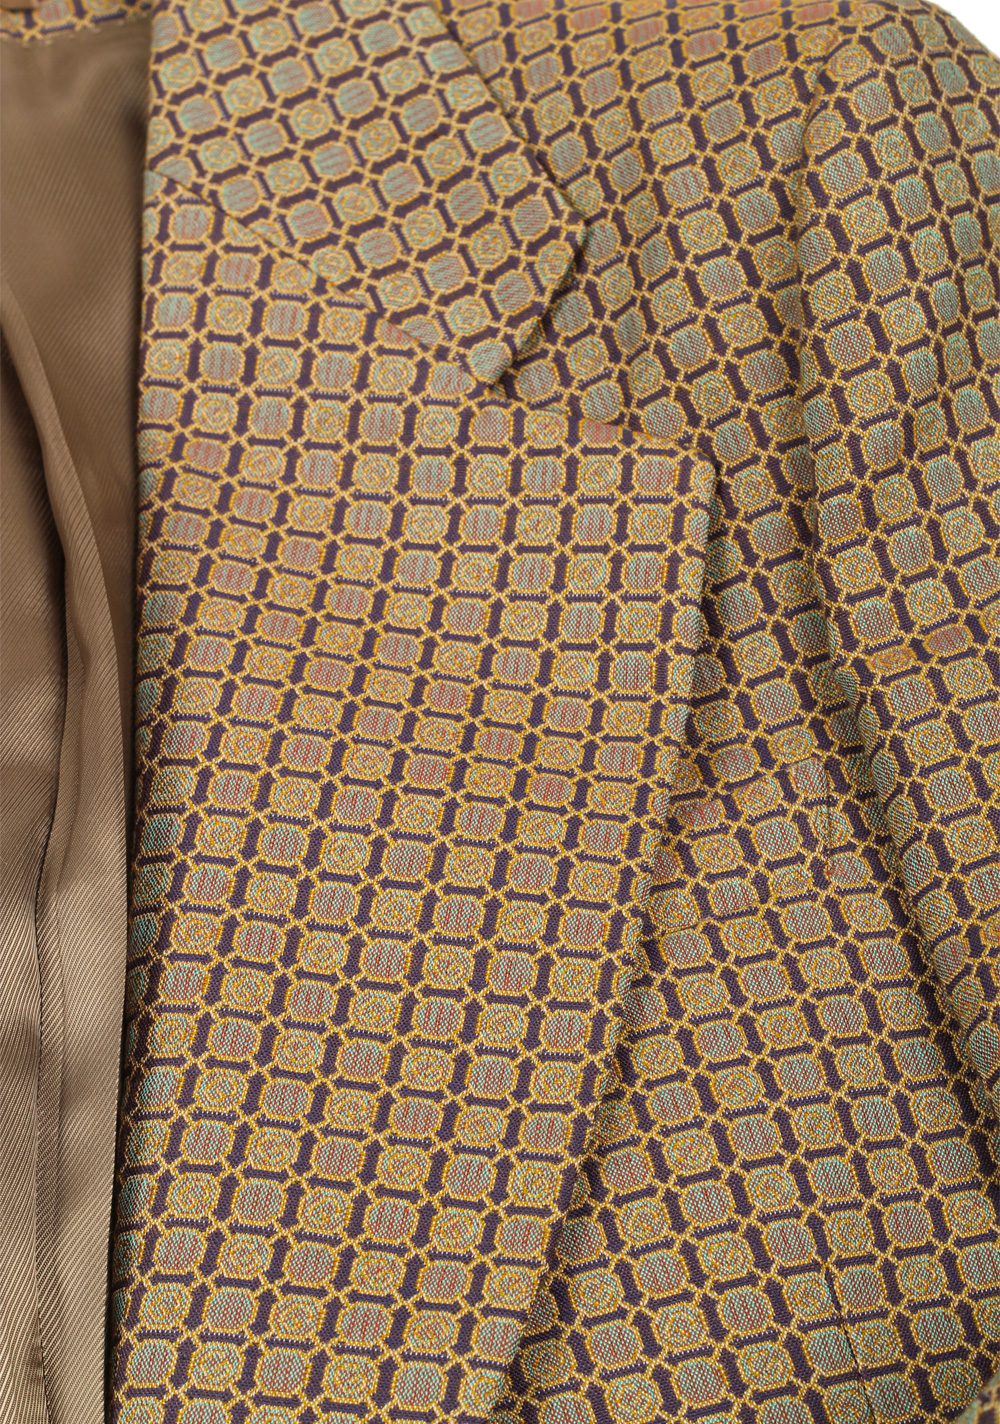 Gucci Beige Patterned Signature Blazer Sport Coat Size 46 / 36R U.S. | Costume Limité